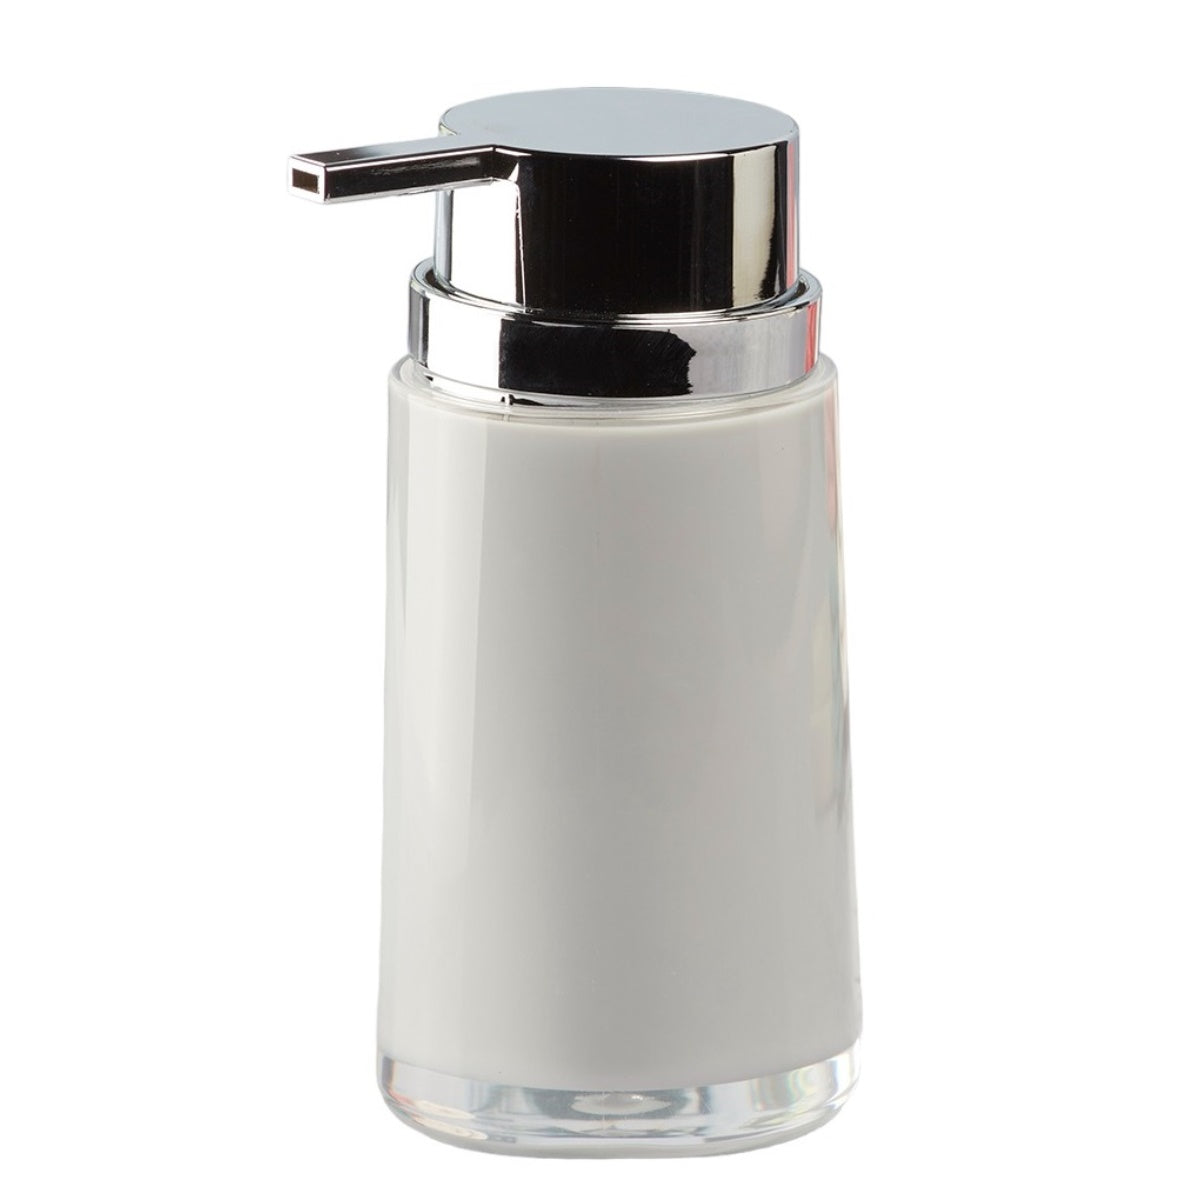 Acrylic Soap Dispenser Pump for Bathroom for Bath Gel, Lotion, Shampoo(8453)